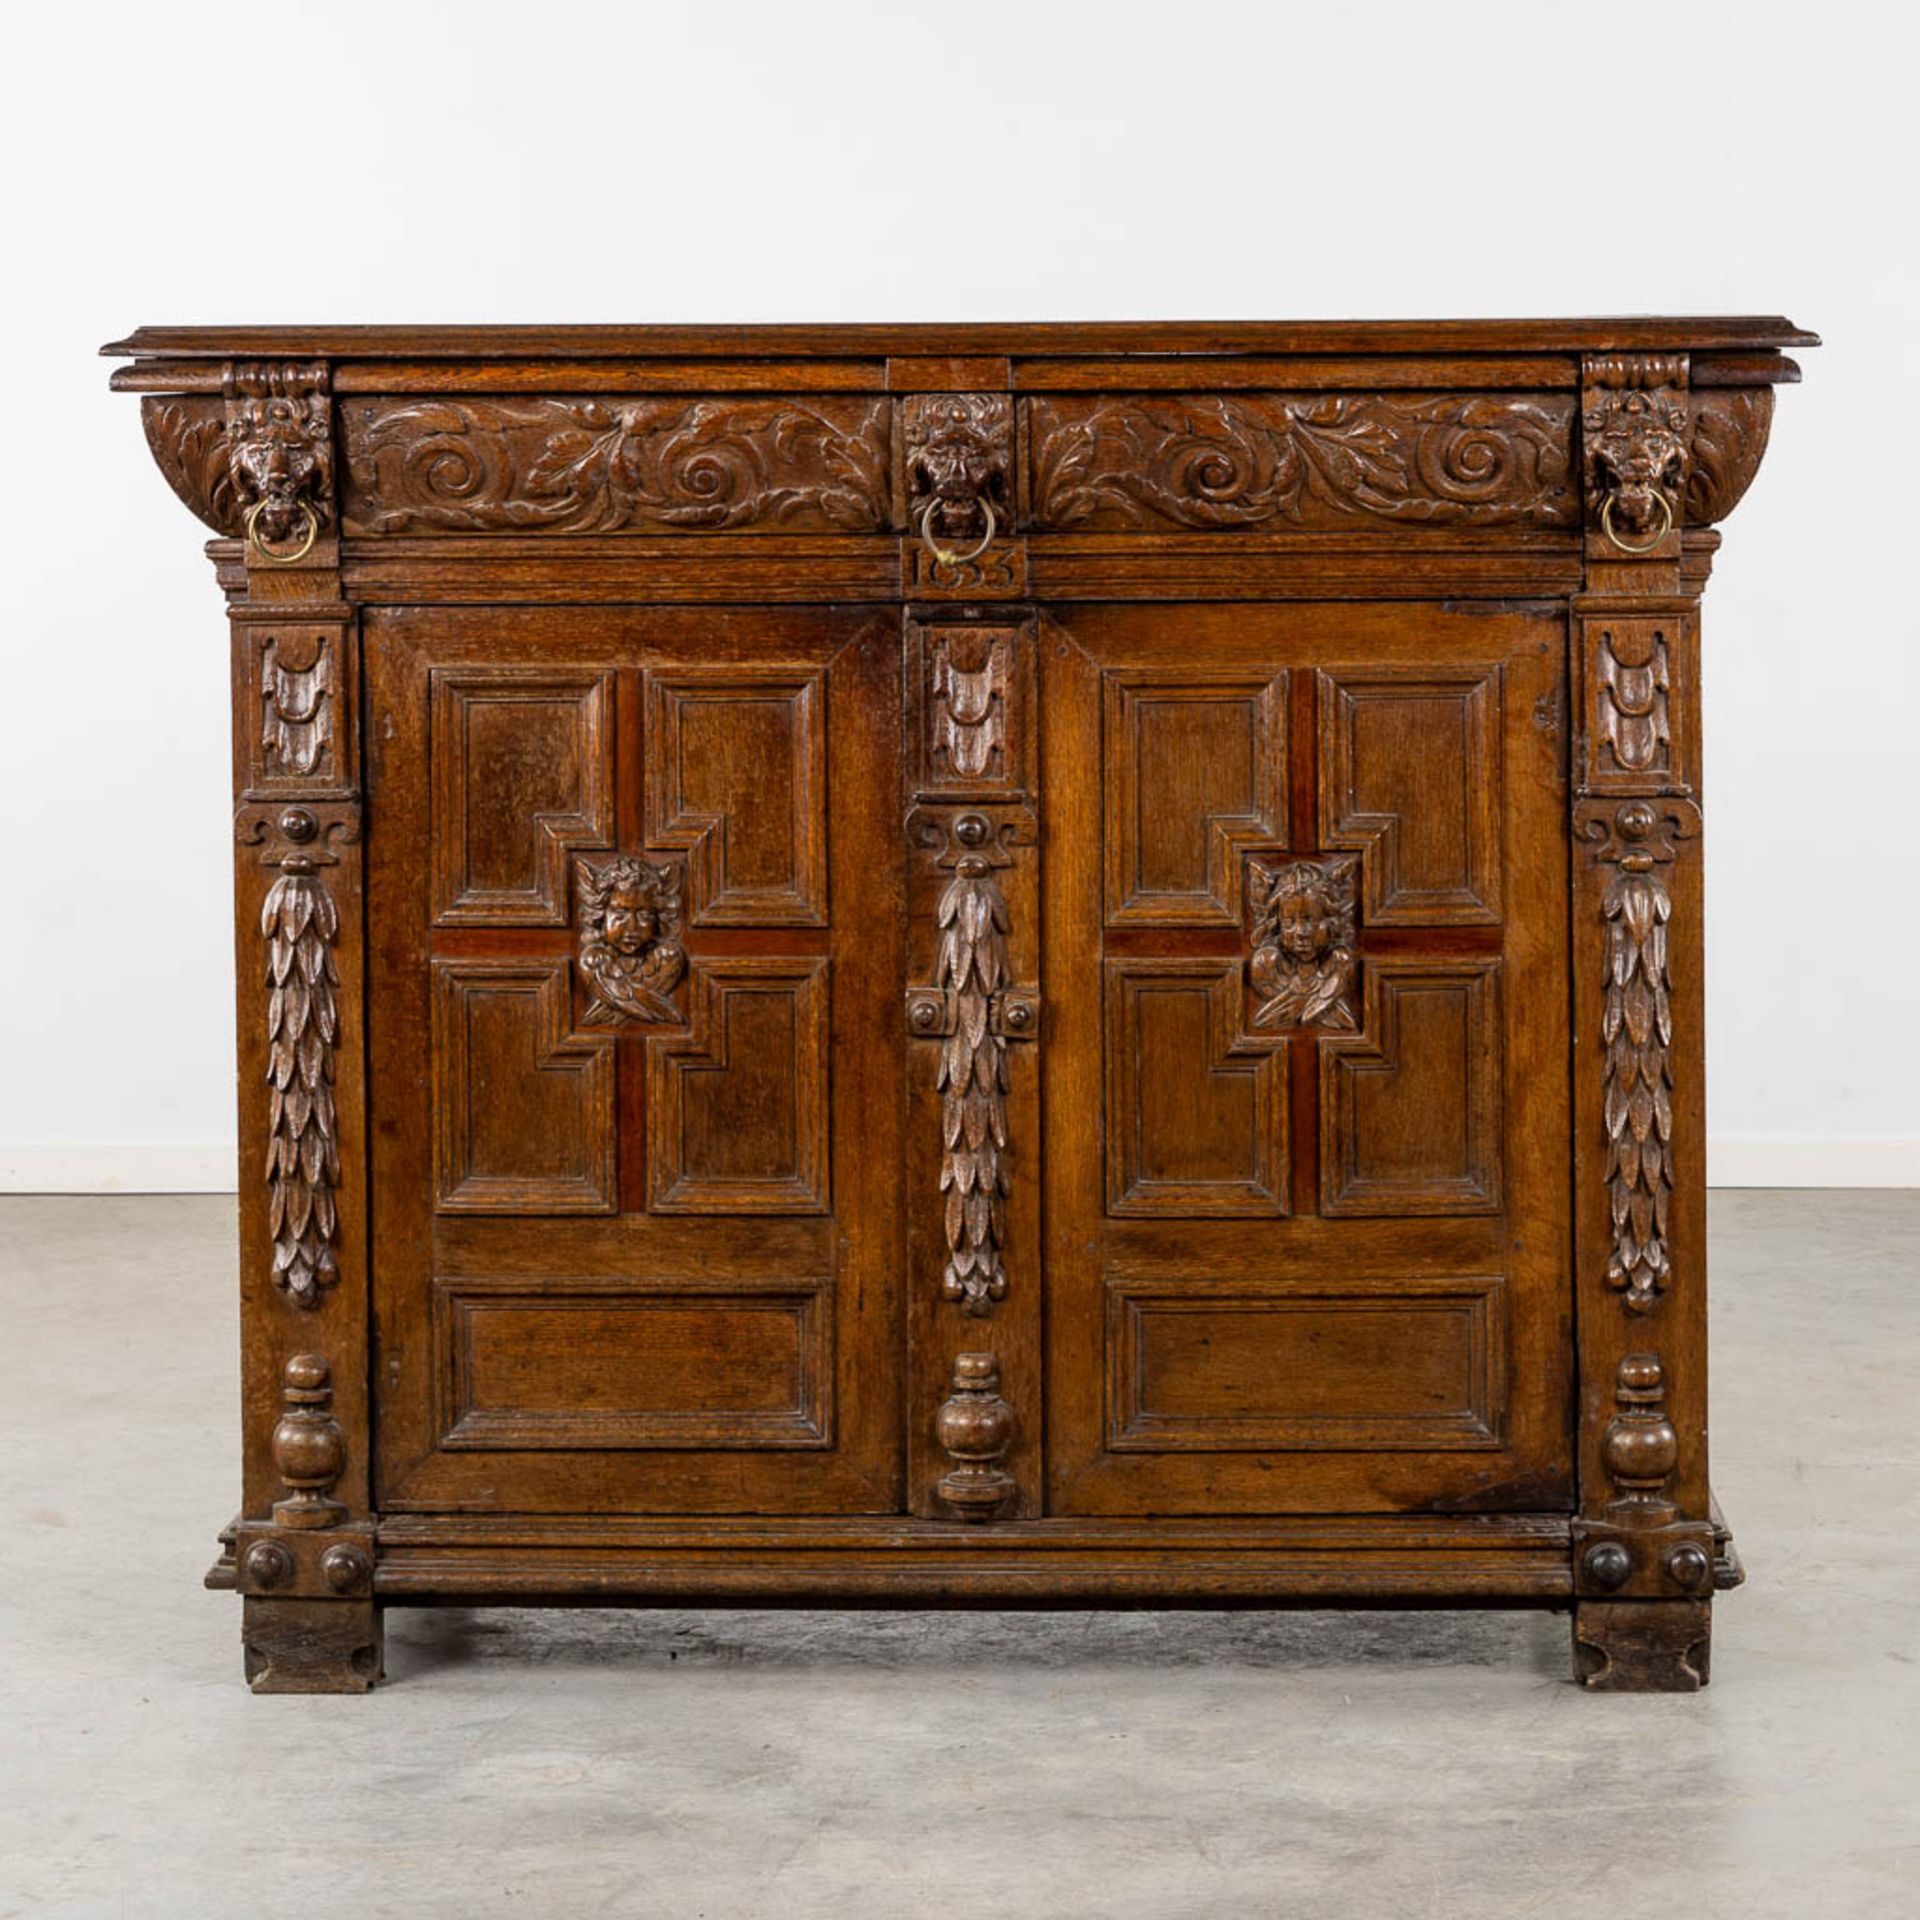 A cabinet, Flemish Renaissance, 17h C. (L:69 x W:158 x H:127 cm) - Image 5 of 18